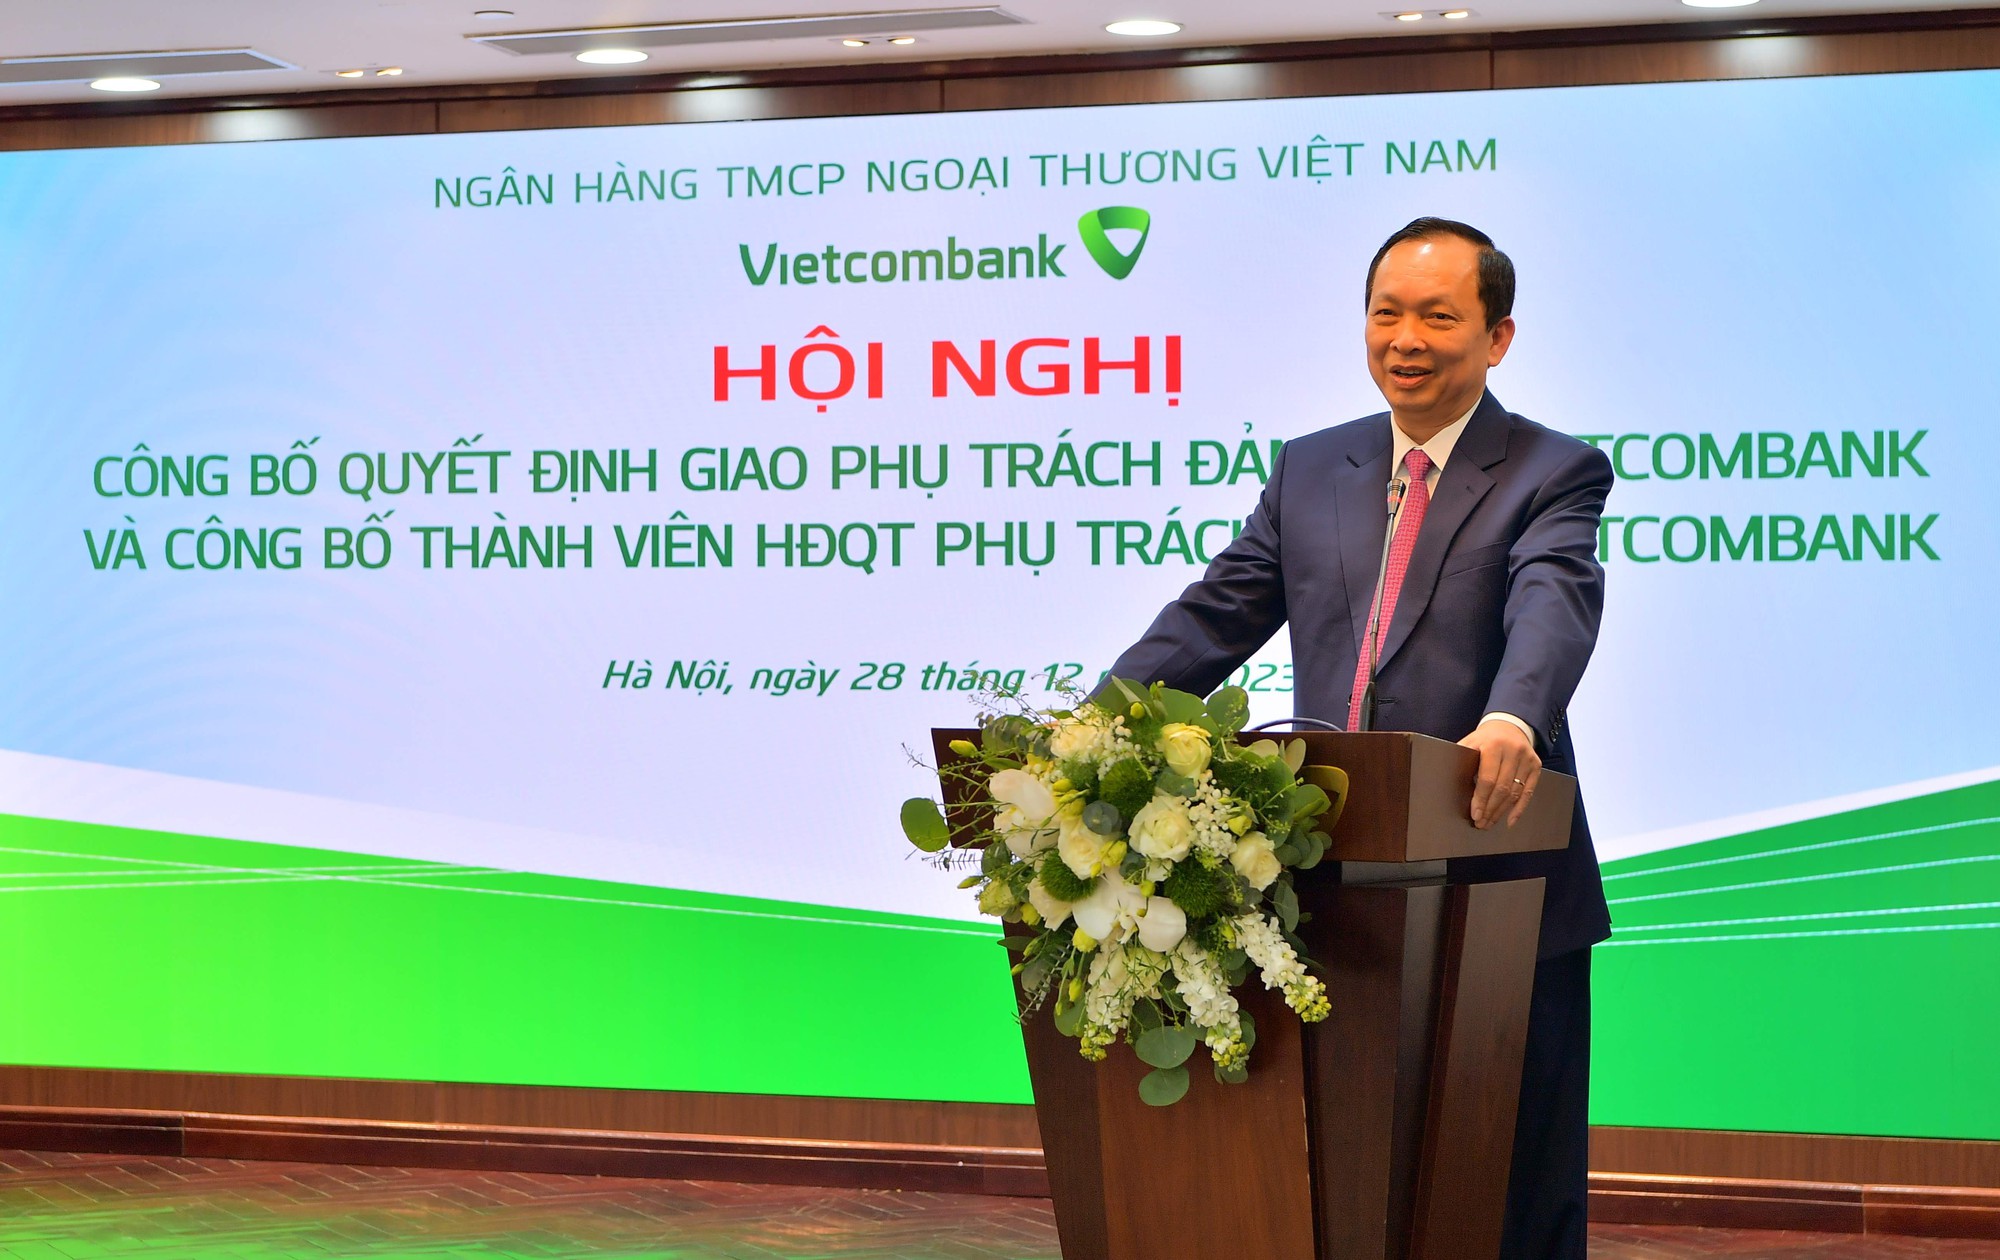 Vietcombank tổ chức hội nghị công bố quyết định giao phụ trách Đảng bộ và thành viên phụ trách Hội đồng quản trị - Ảnh 2.